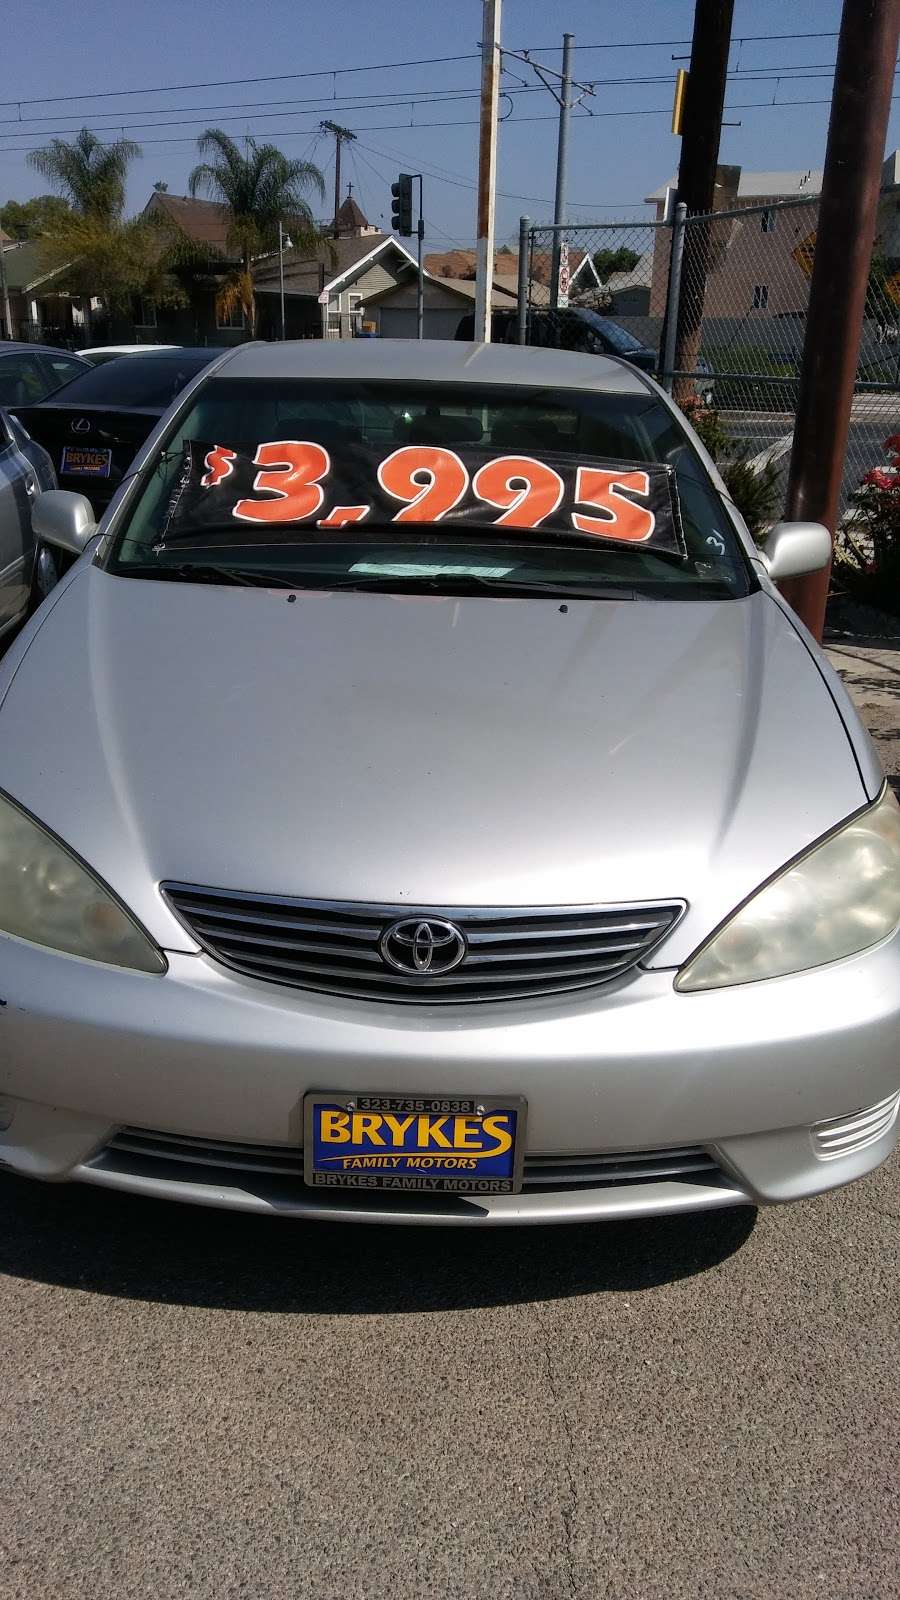 Brykes Family Motors | 3784 Normandie Ave, Los Angeles, CA 90007 | Phone: (323) 735-0838